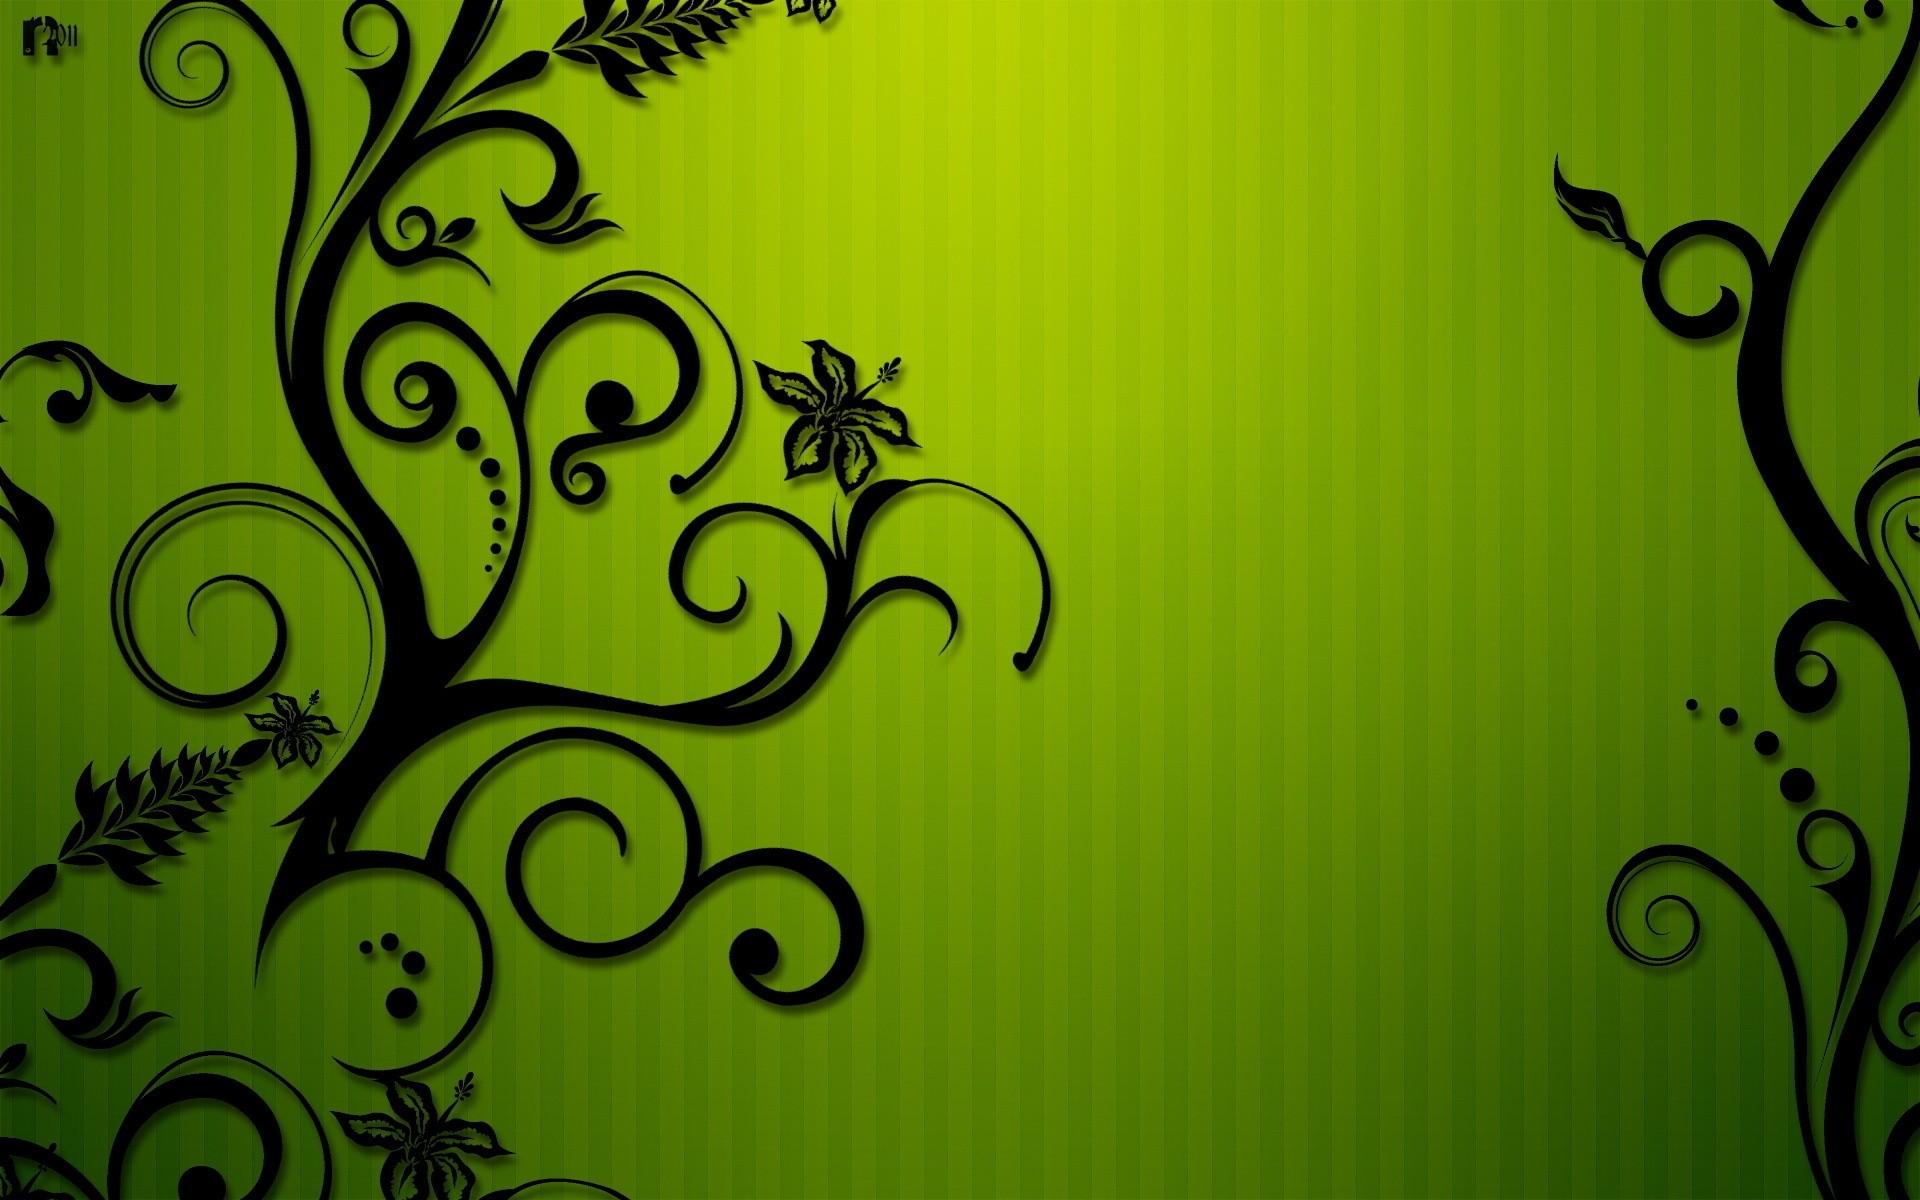 drawings leaf design decoration retro desktop abstract pattern ornate illustration flora floral art vector element elegant wallpaper vintage silhouette curve graphic background black green image